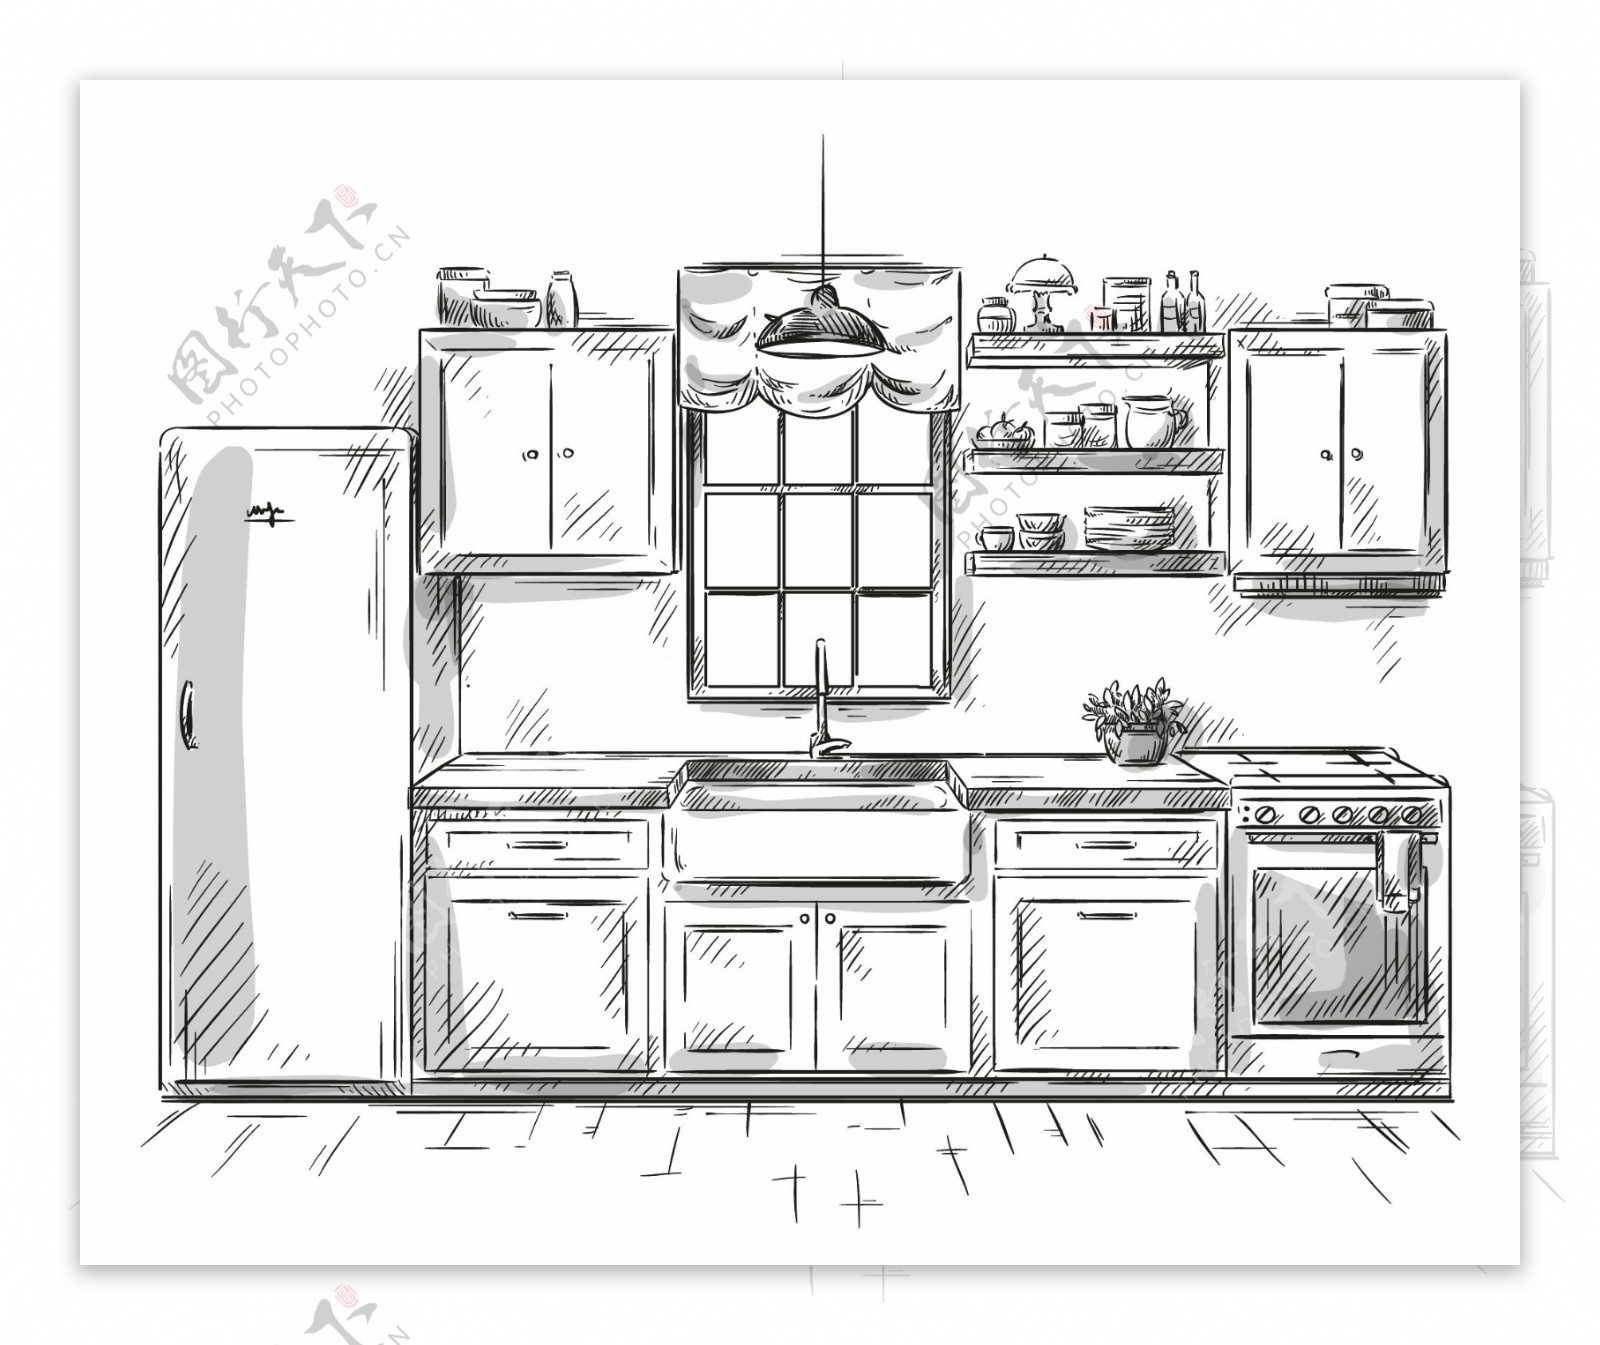 黑白手绘家具厨柜插画